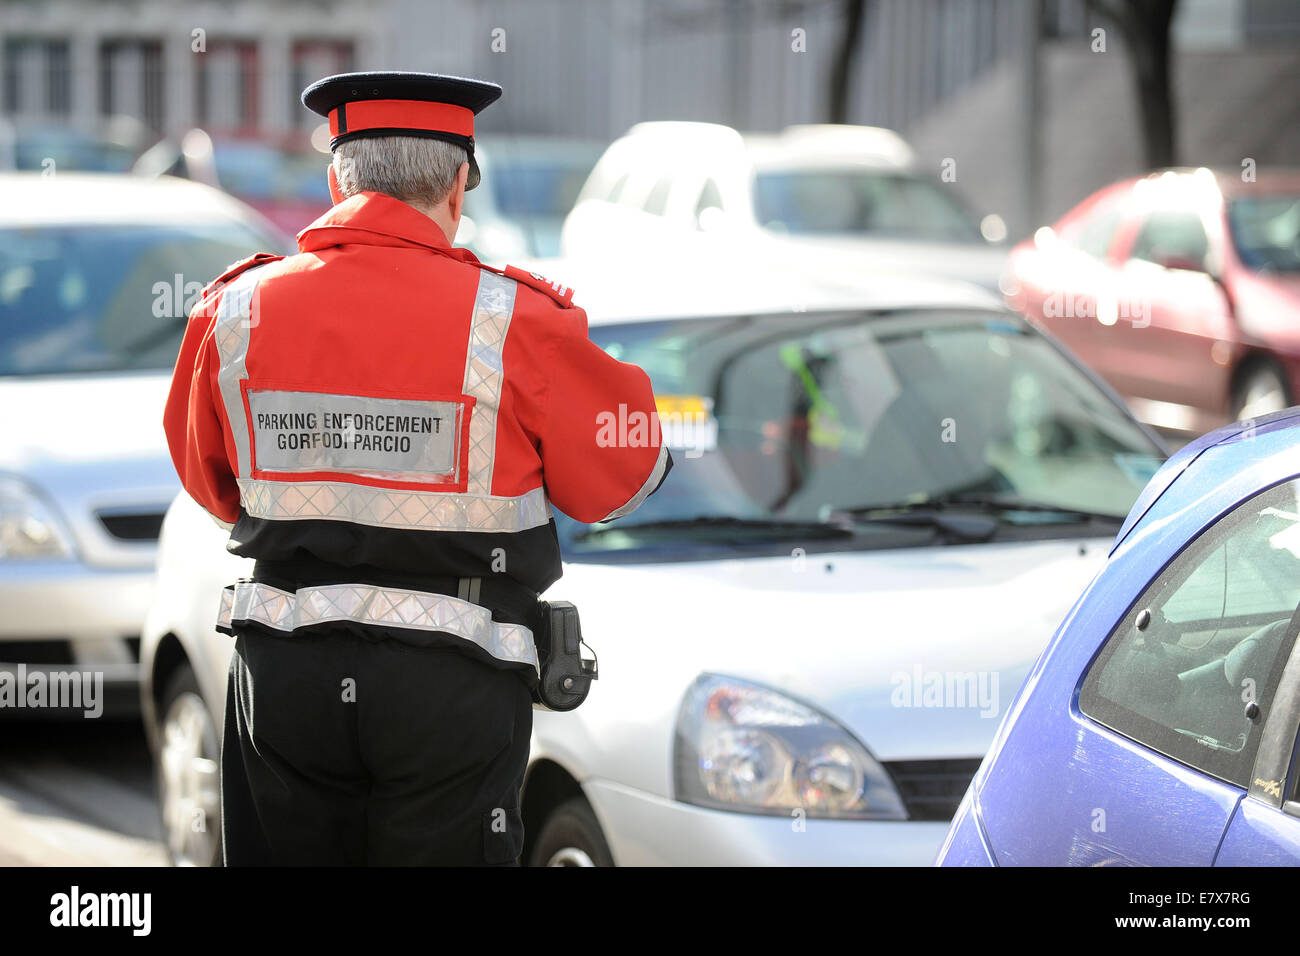 Un gardien de la circulation (agent d'exécution civile) en patrouille l'émission des contraventions de stationnement de voitures stationnées illégalement à Cardiff au Pays de Galles. Banque D'Images